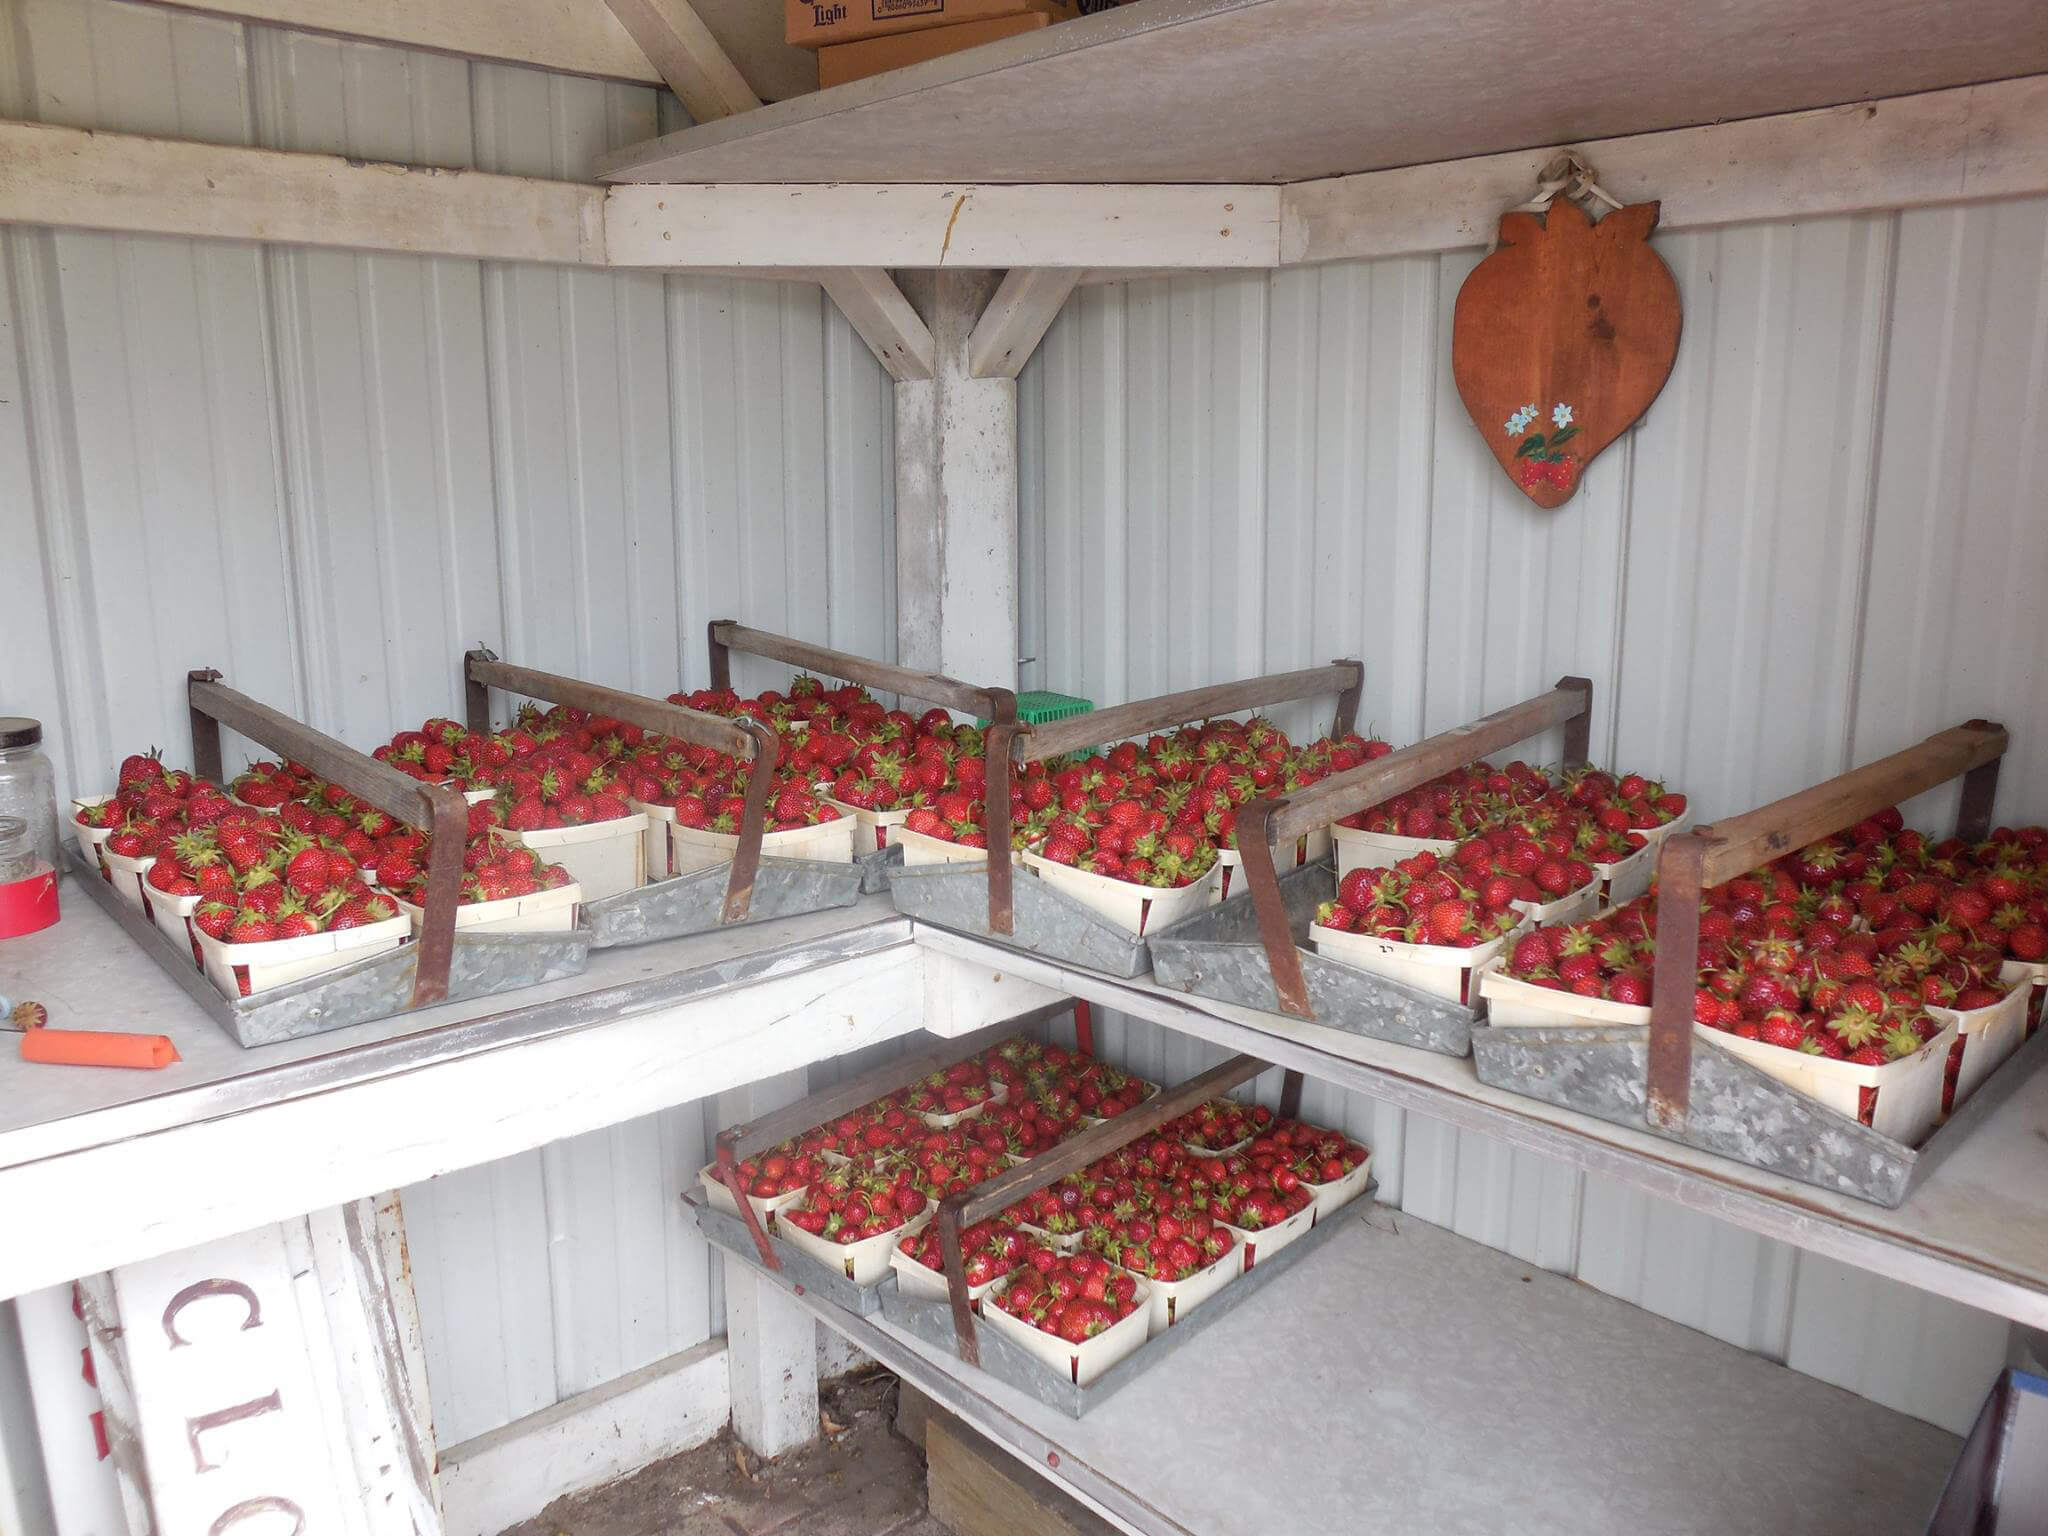 Strawberries Market